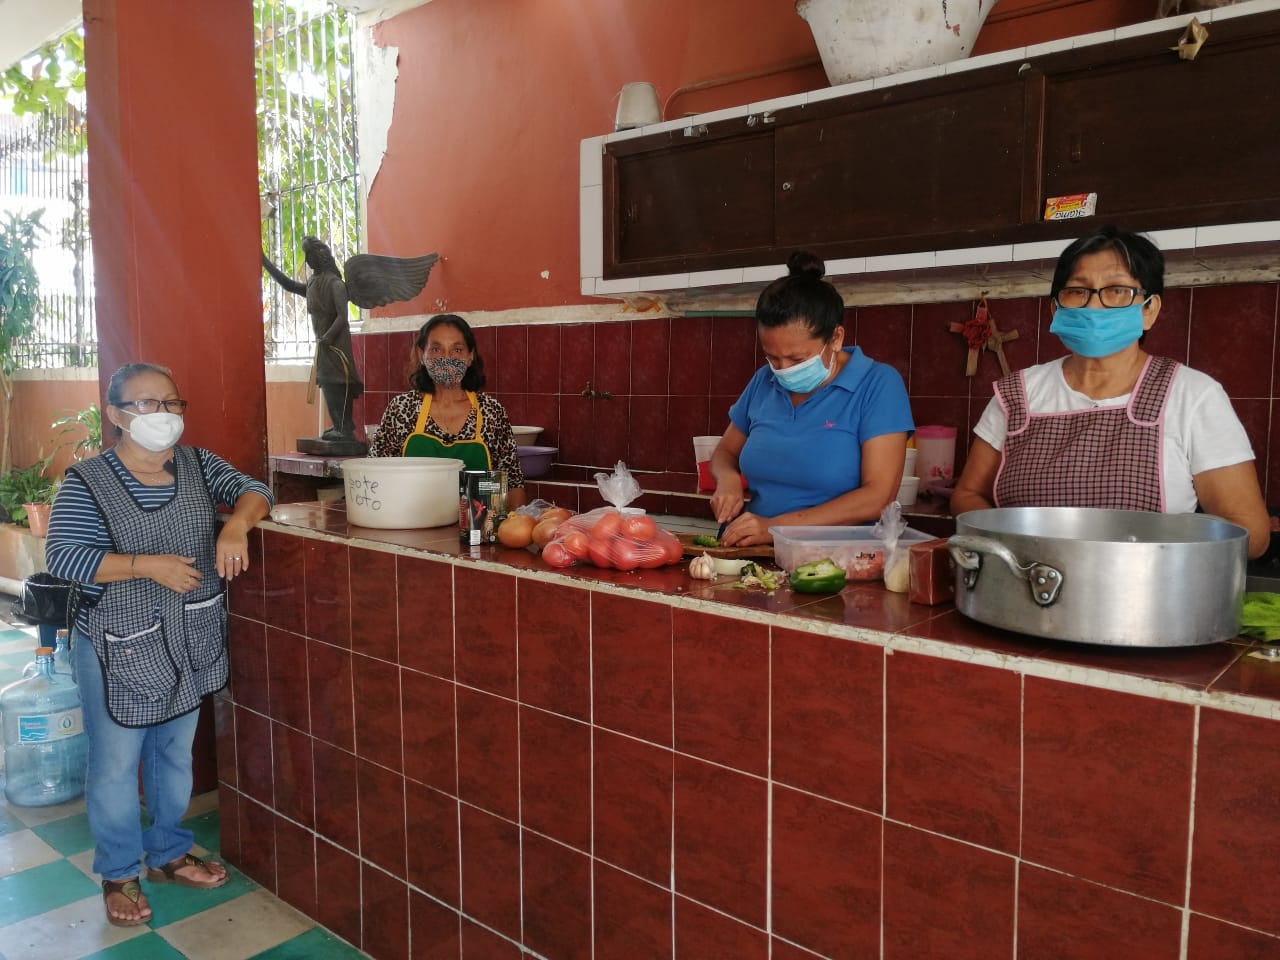 Comedor comunitario en Ciudad del Carmen requiere de donativos